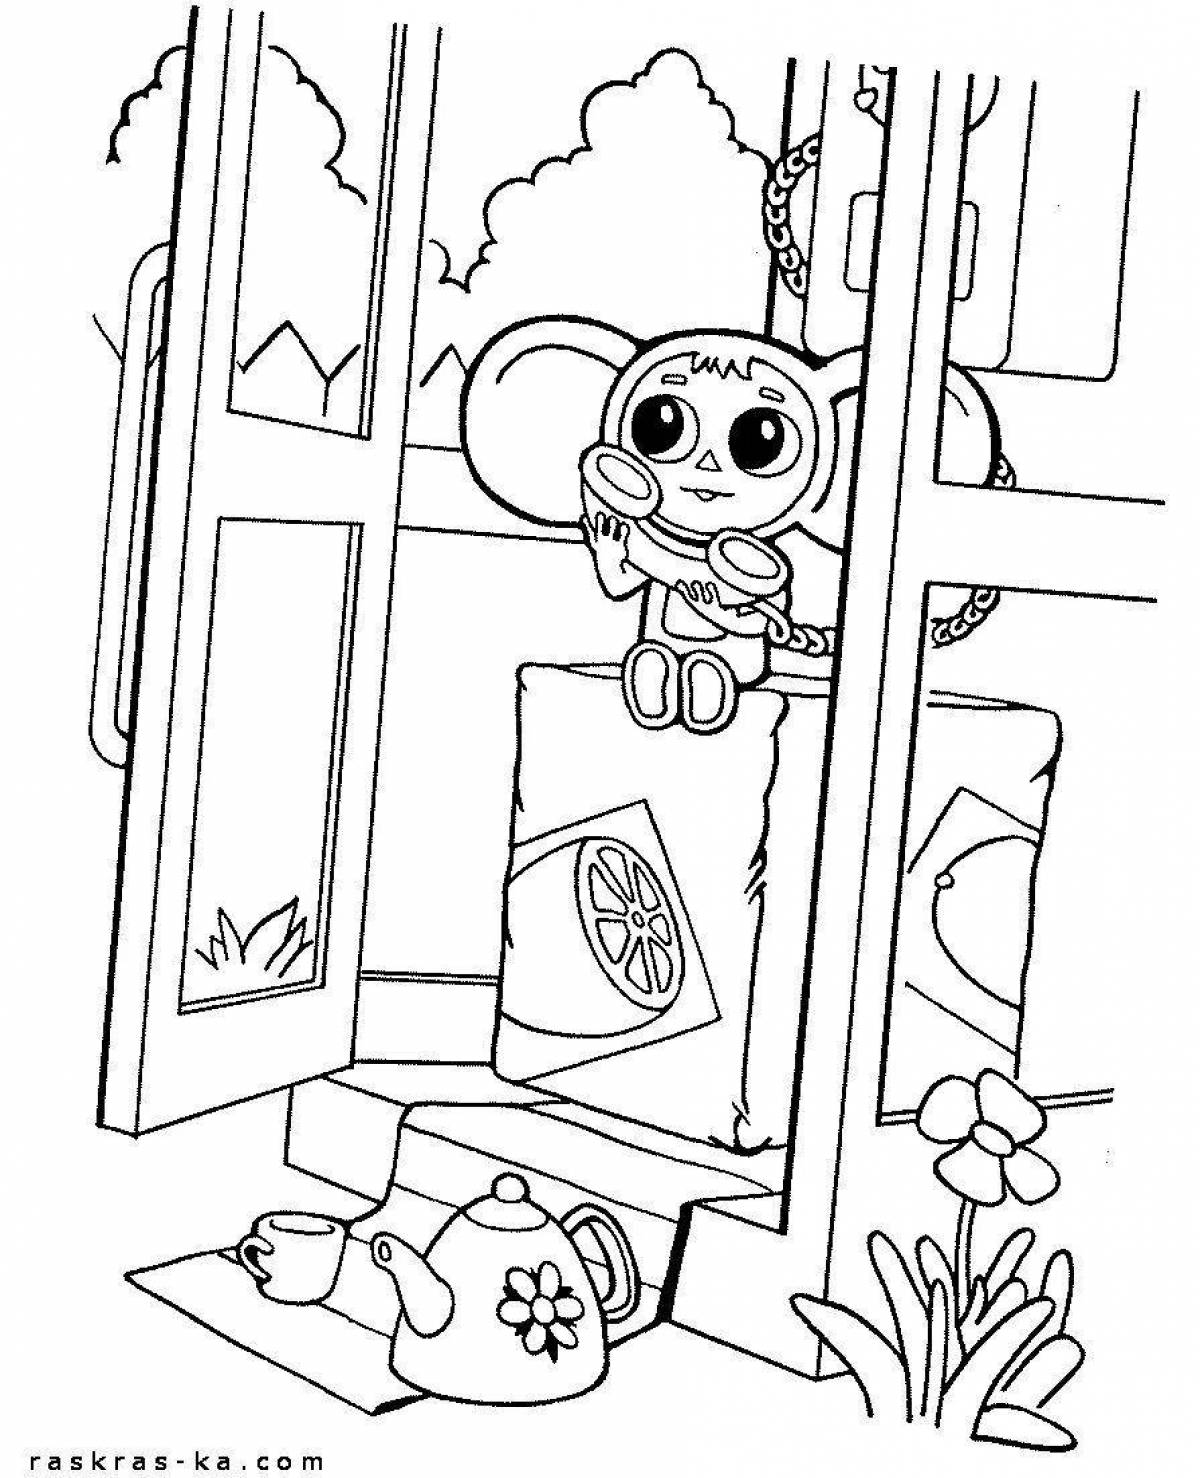 Delightful drawing of Cheburashka